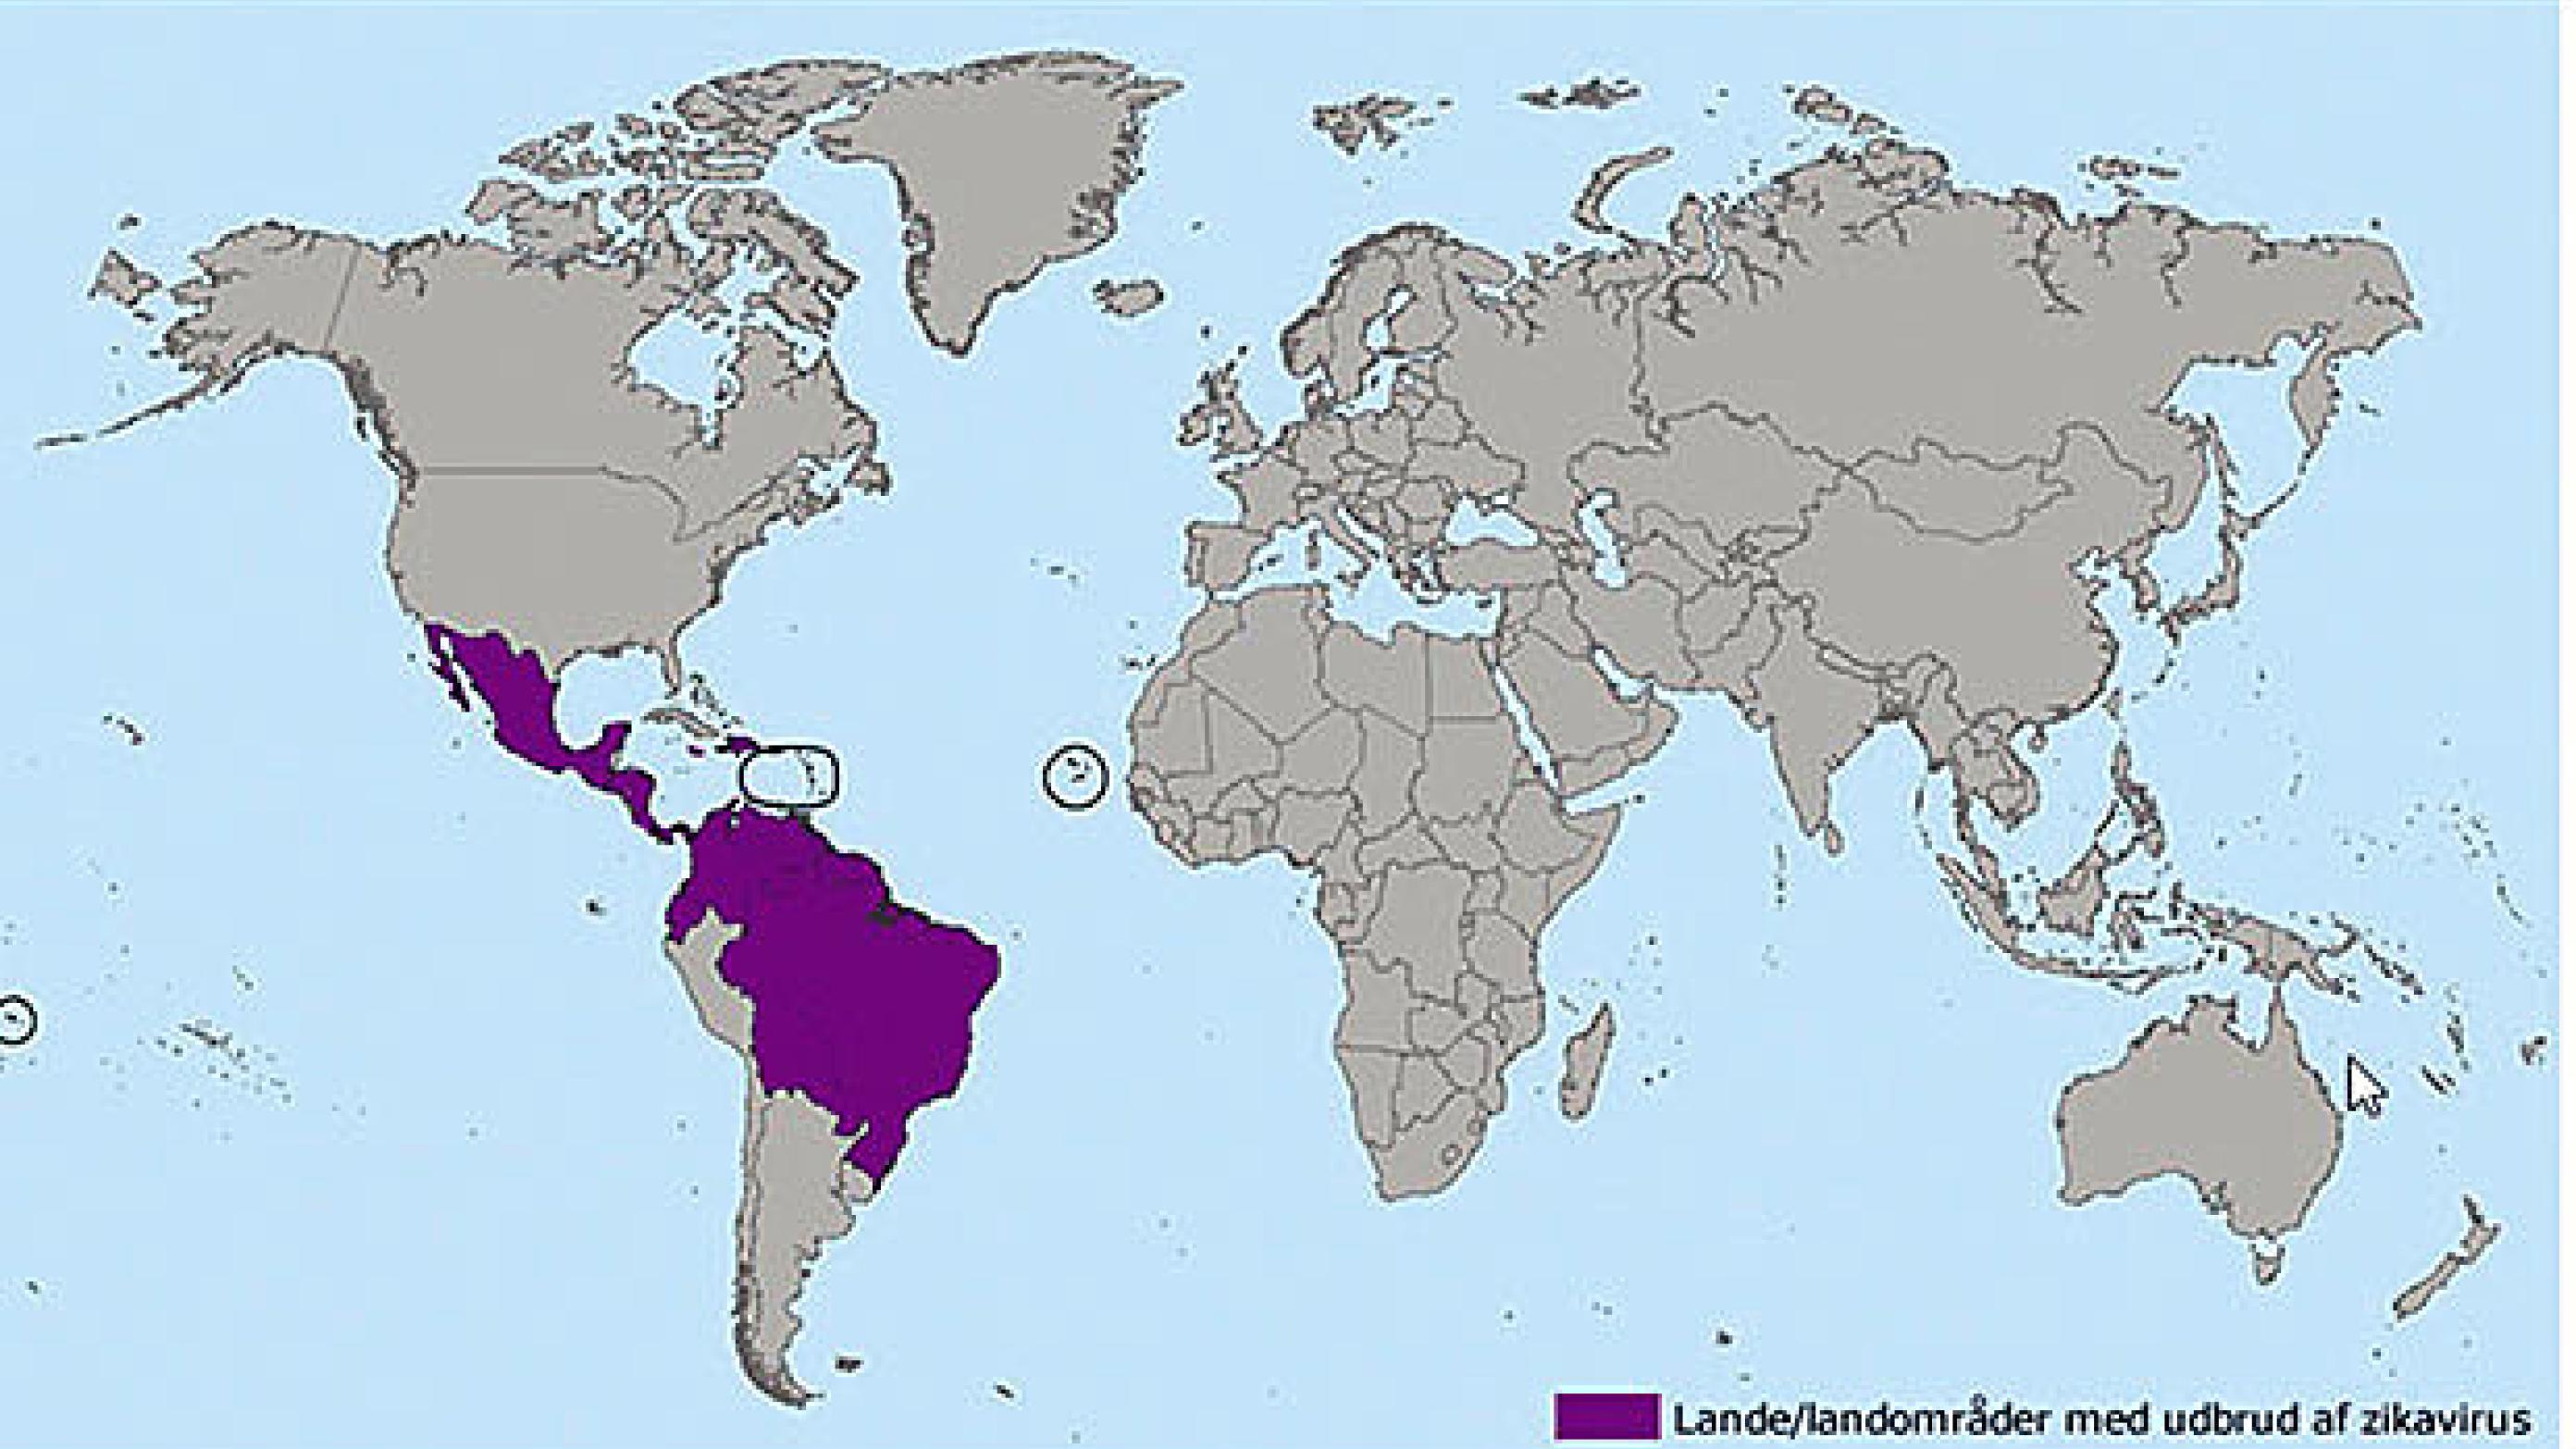 Landområder med udbrud af zikavirus. (Kilde: Statens Serum Institut, www.ssi.dk/Aktuelt/Sygdomsudbrud/zikavirus.aspx og Centers for Disease Control and Prevention, www.cdc.gov/zika/geo/index.html).